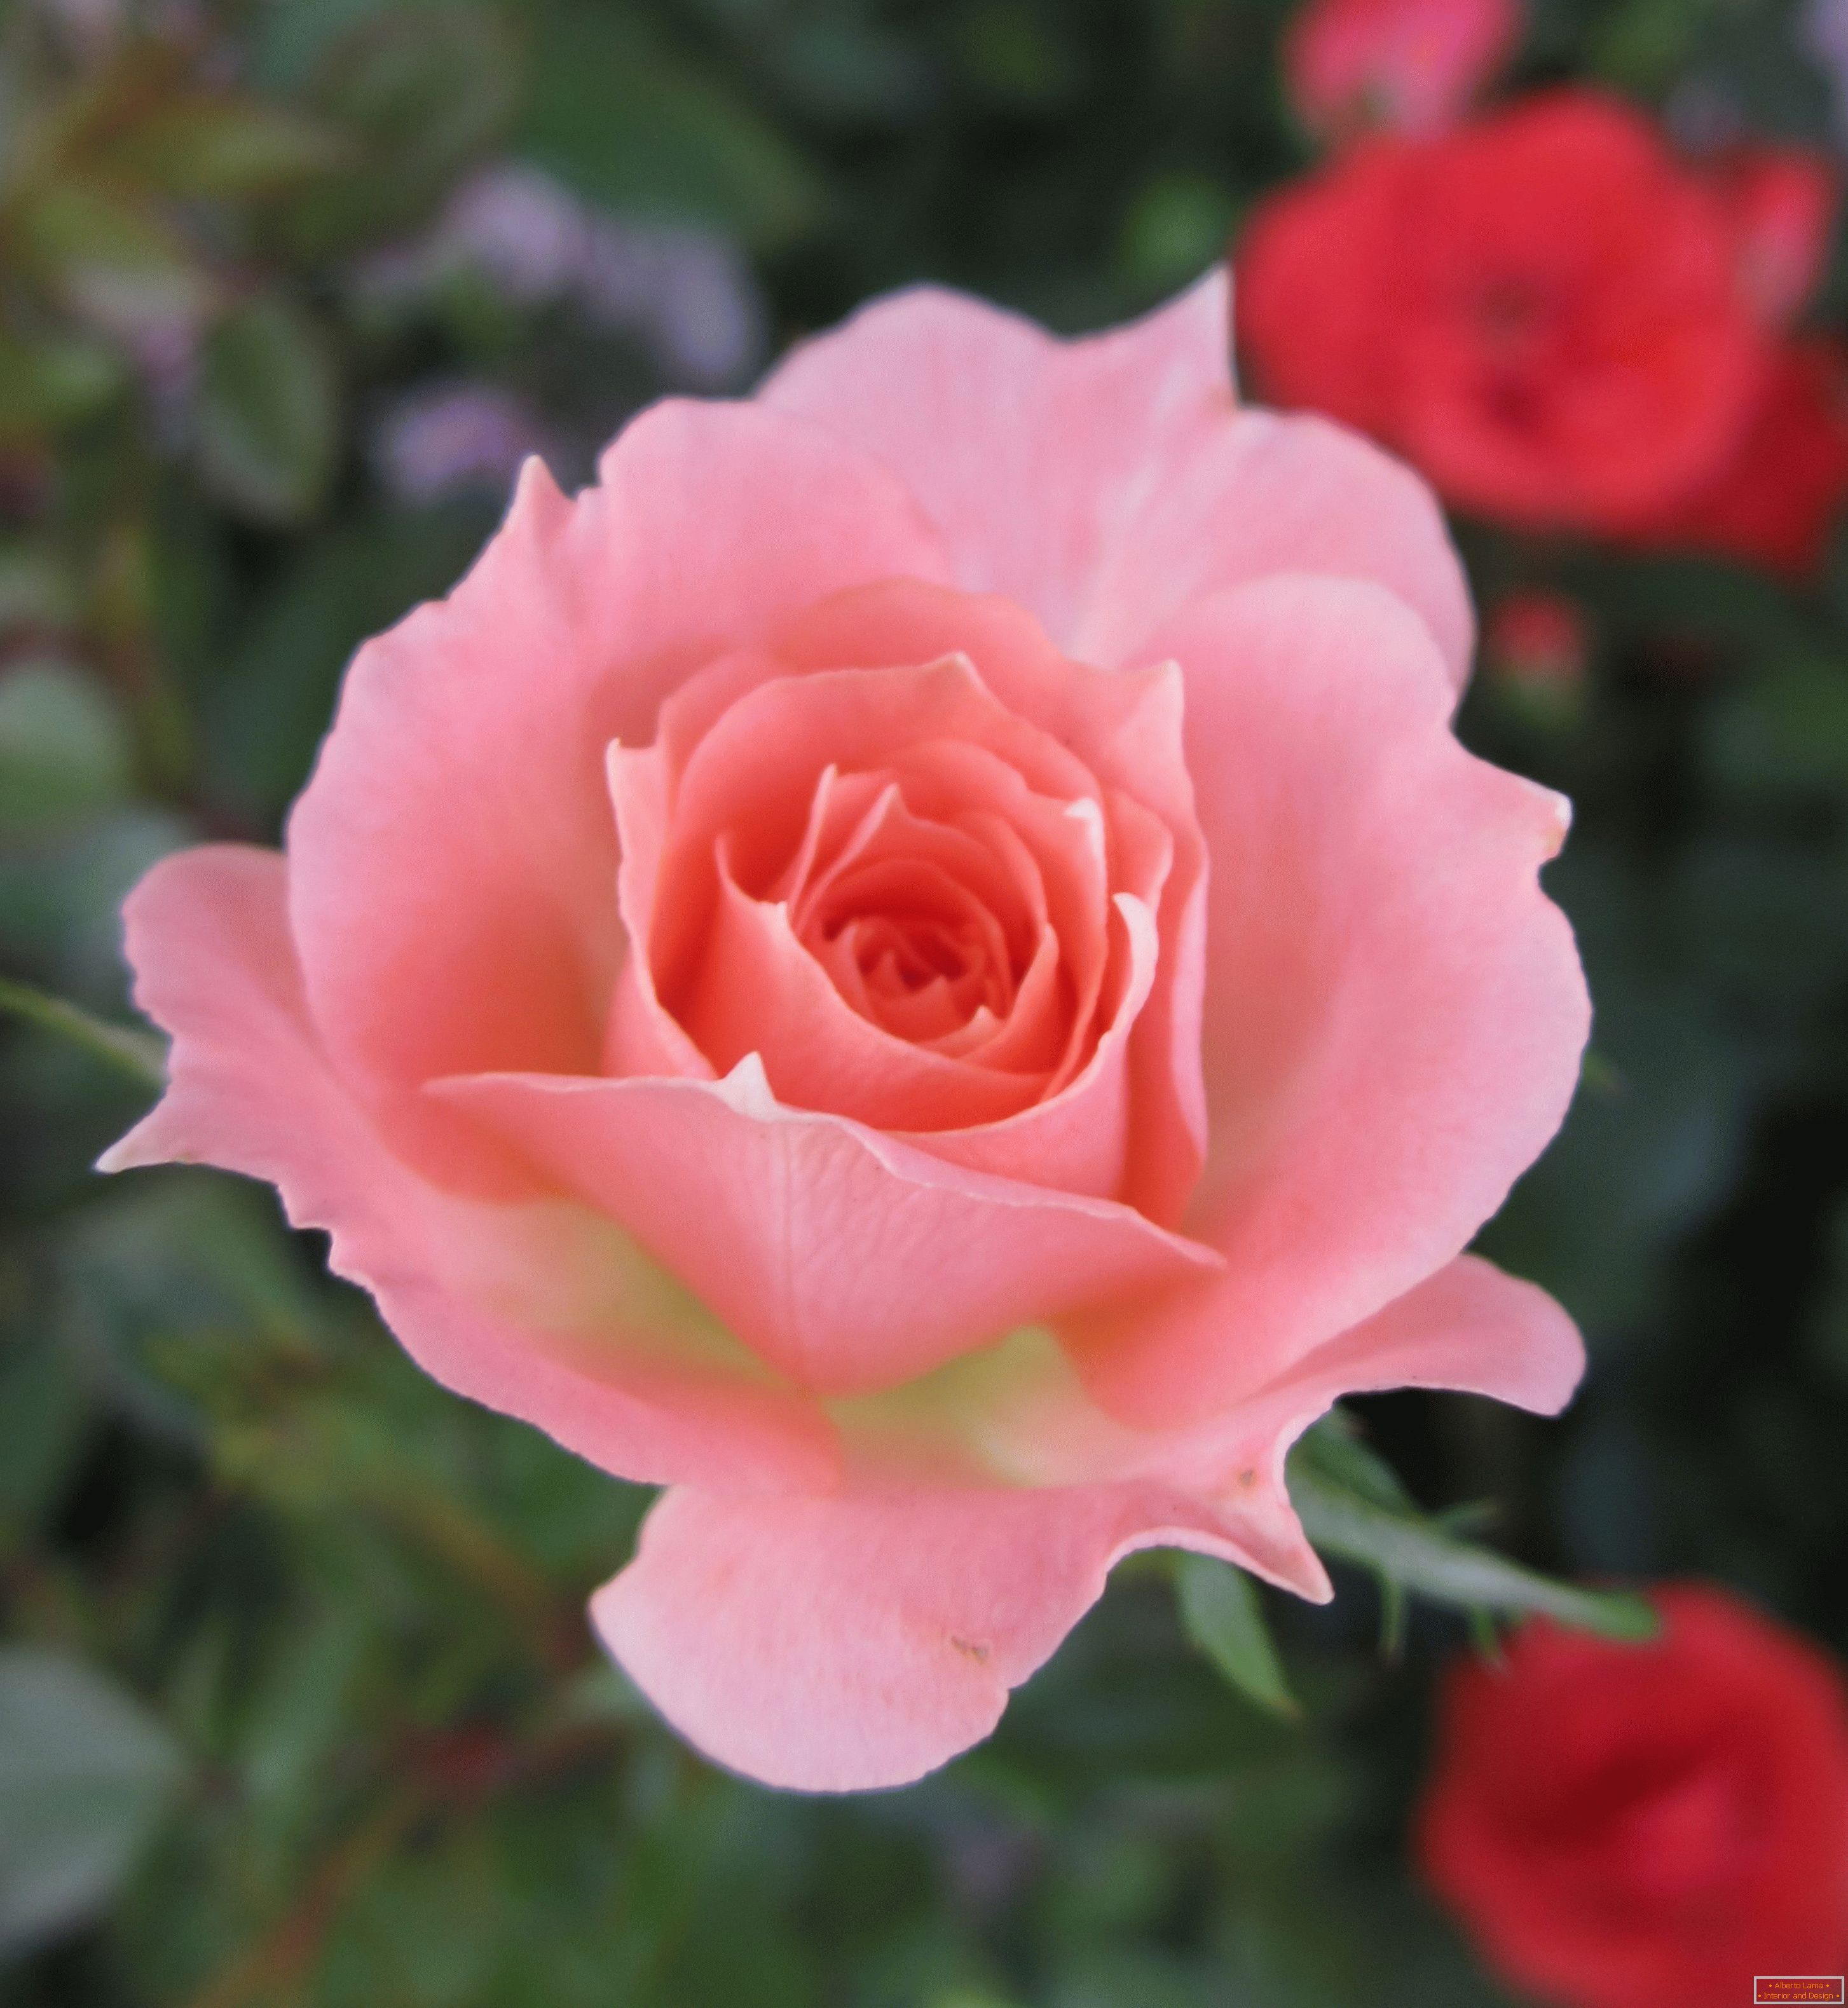 Ружа розе боје у окружењу црвених цвијећа